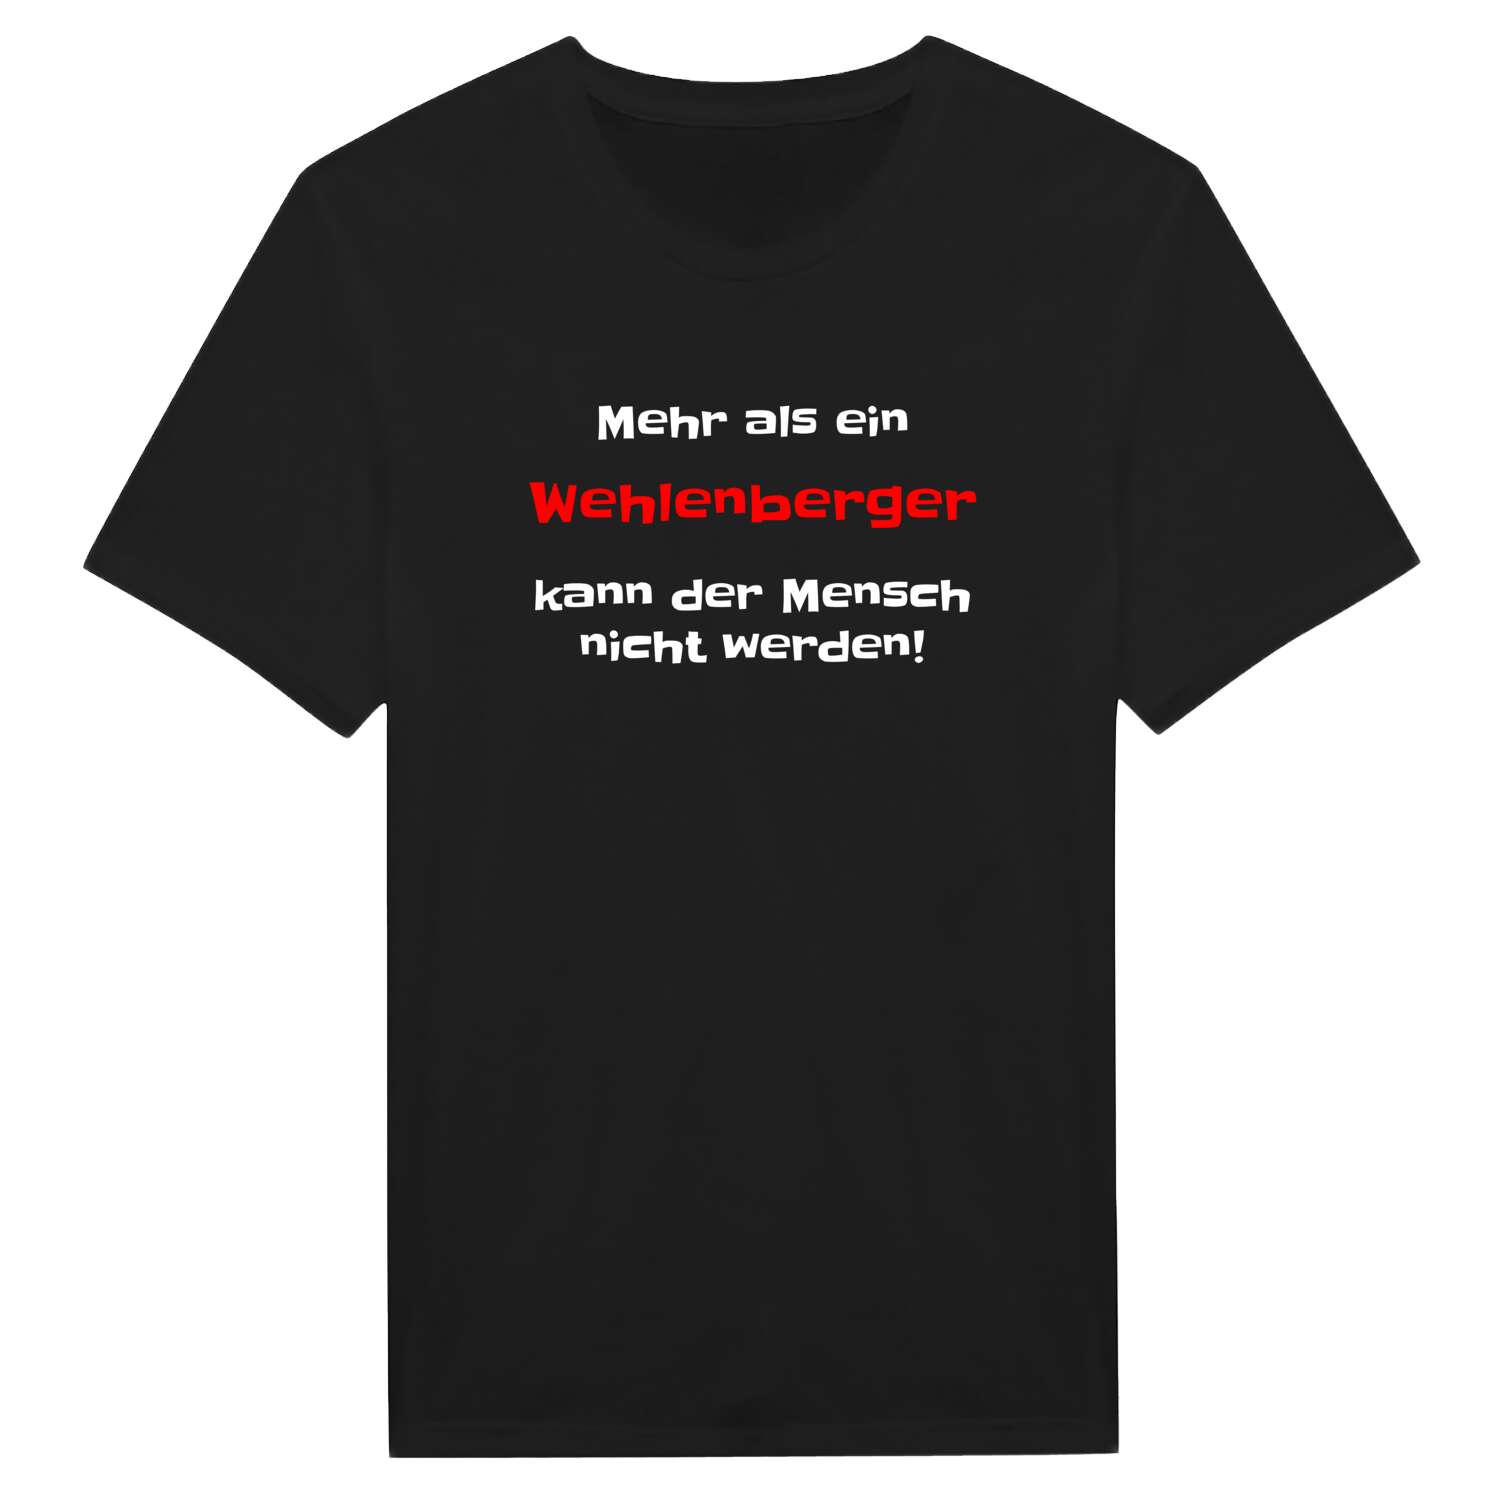 Wehlenberg T-Shirt »Mehr als ein«